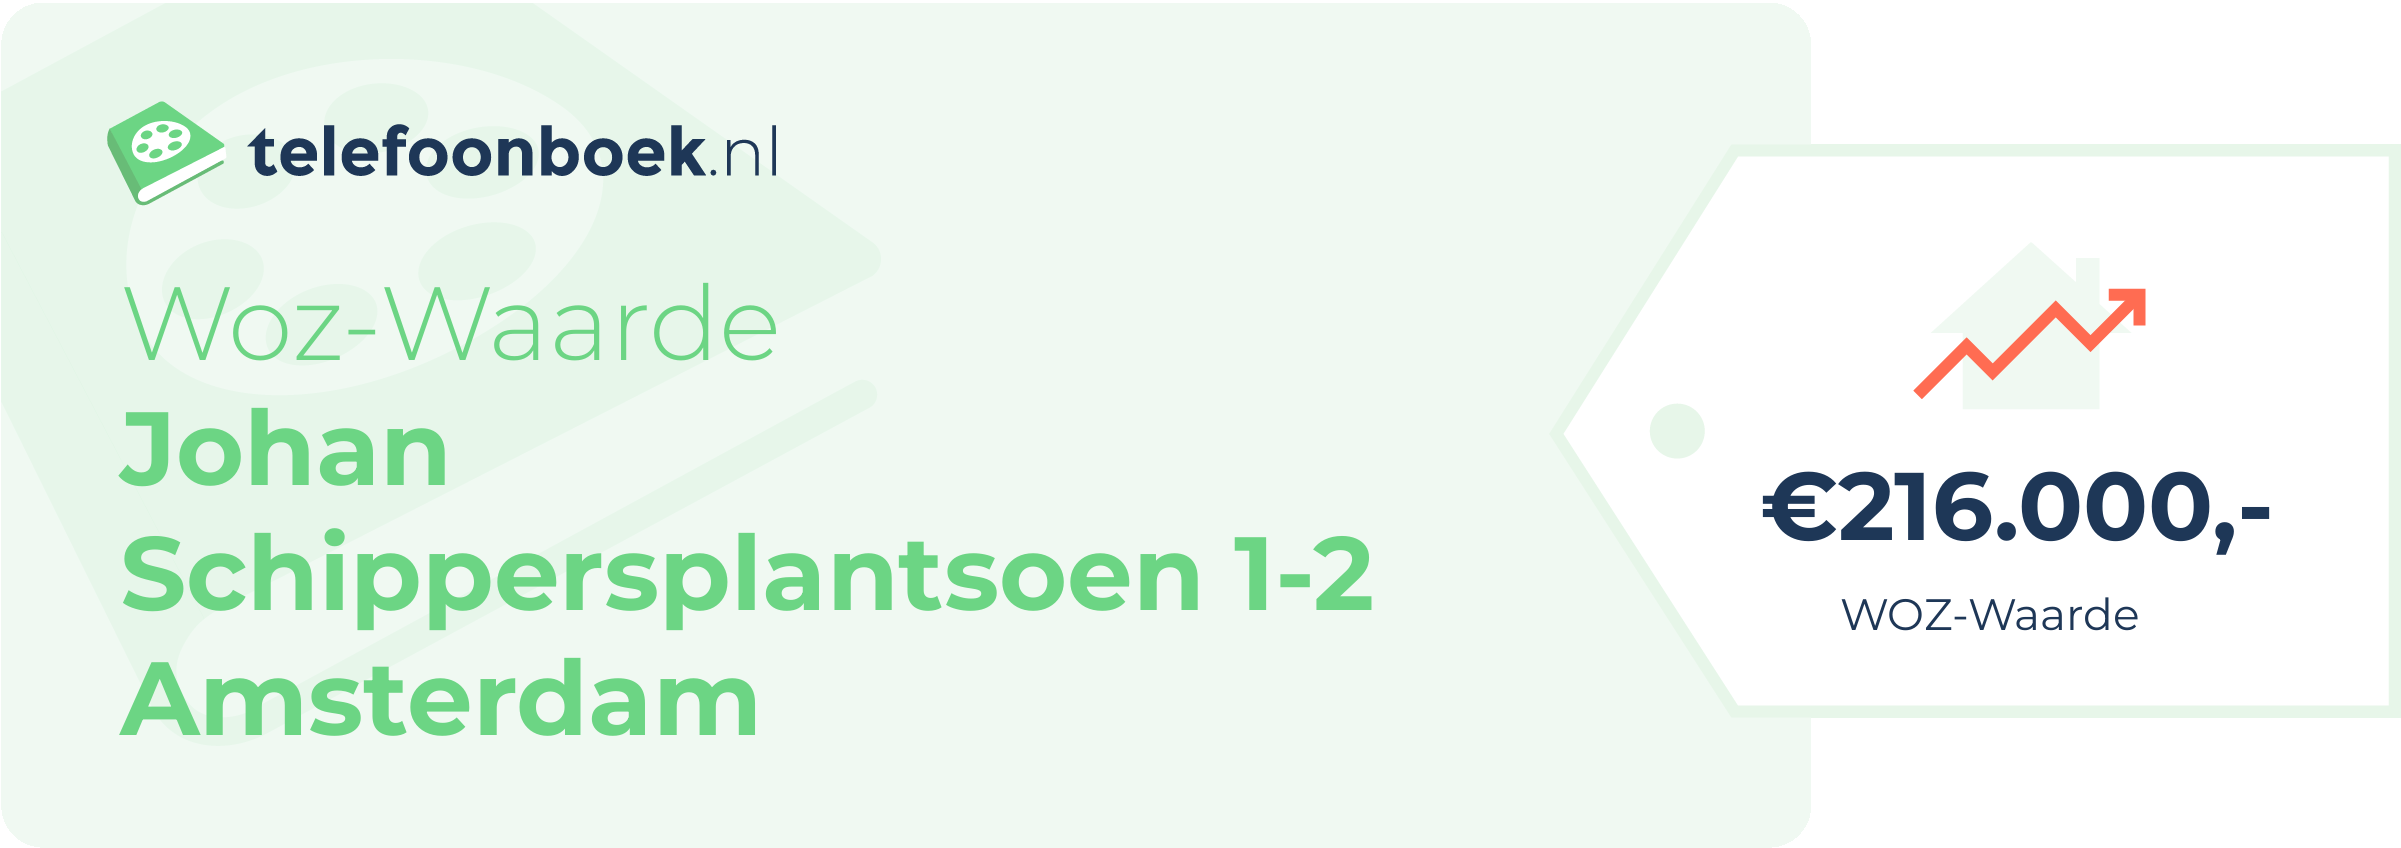 WOZ-waarde Johan Schippersplantsoen 1-2 Amsterdam